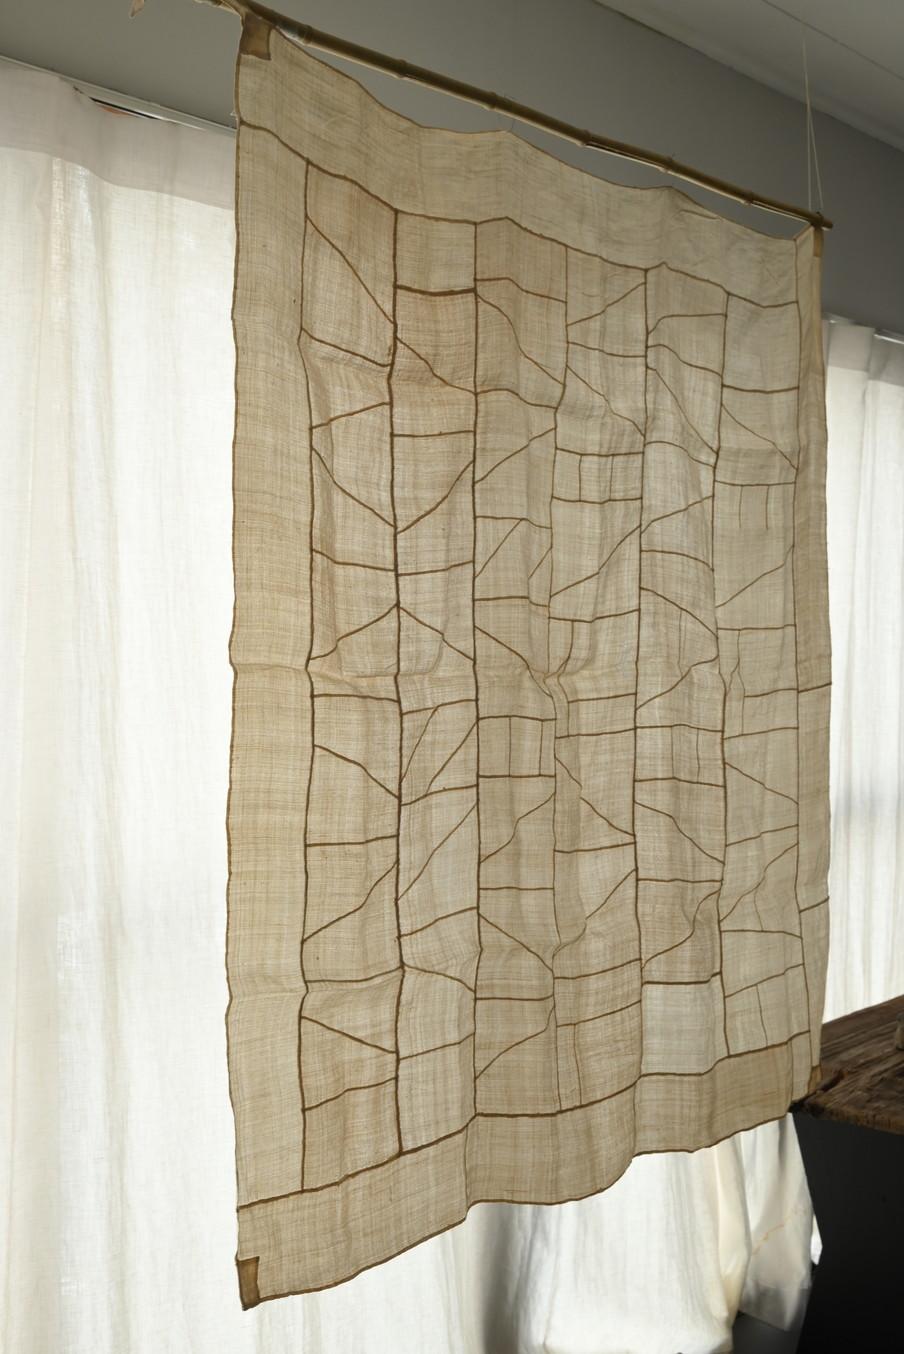 Il s'agit d'un vieux tissu coréen en patchwork fabriqué aux alentours du 20e siècle.
Le nom est 